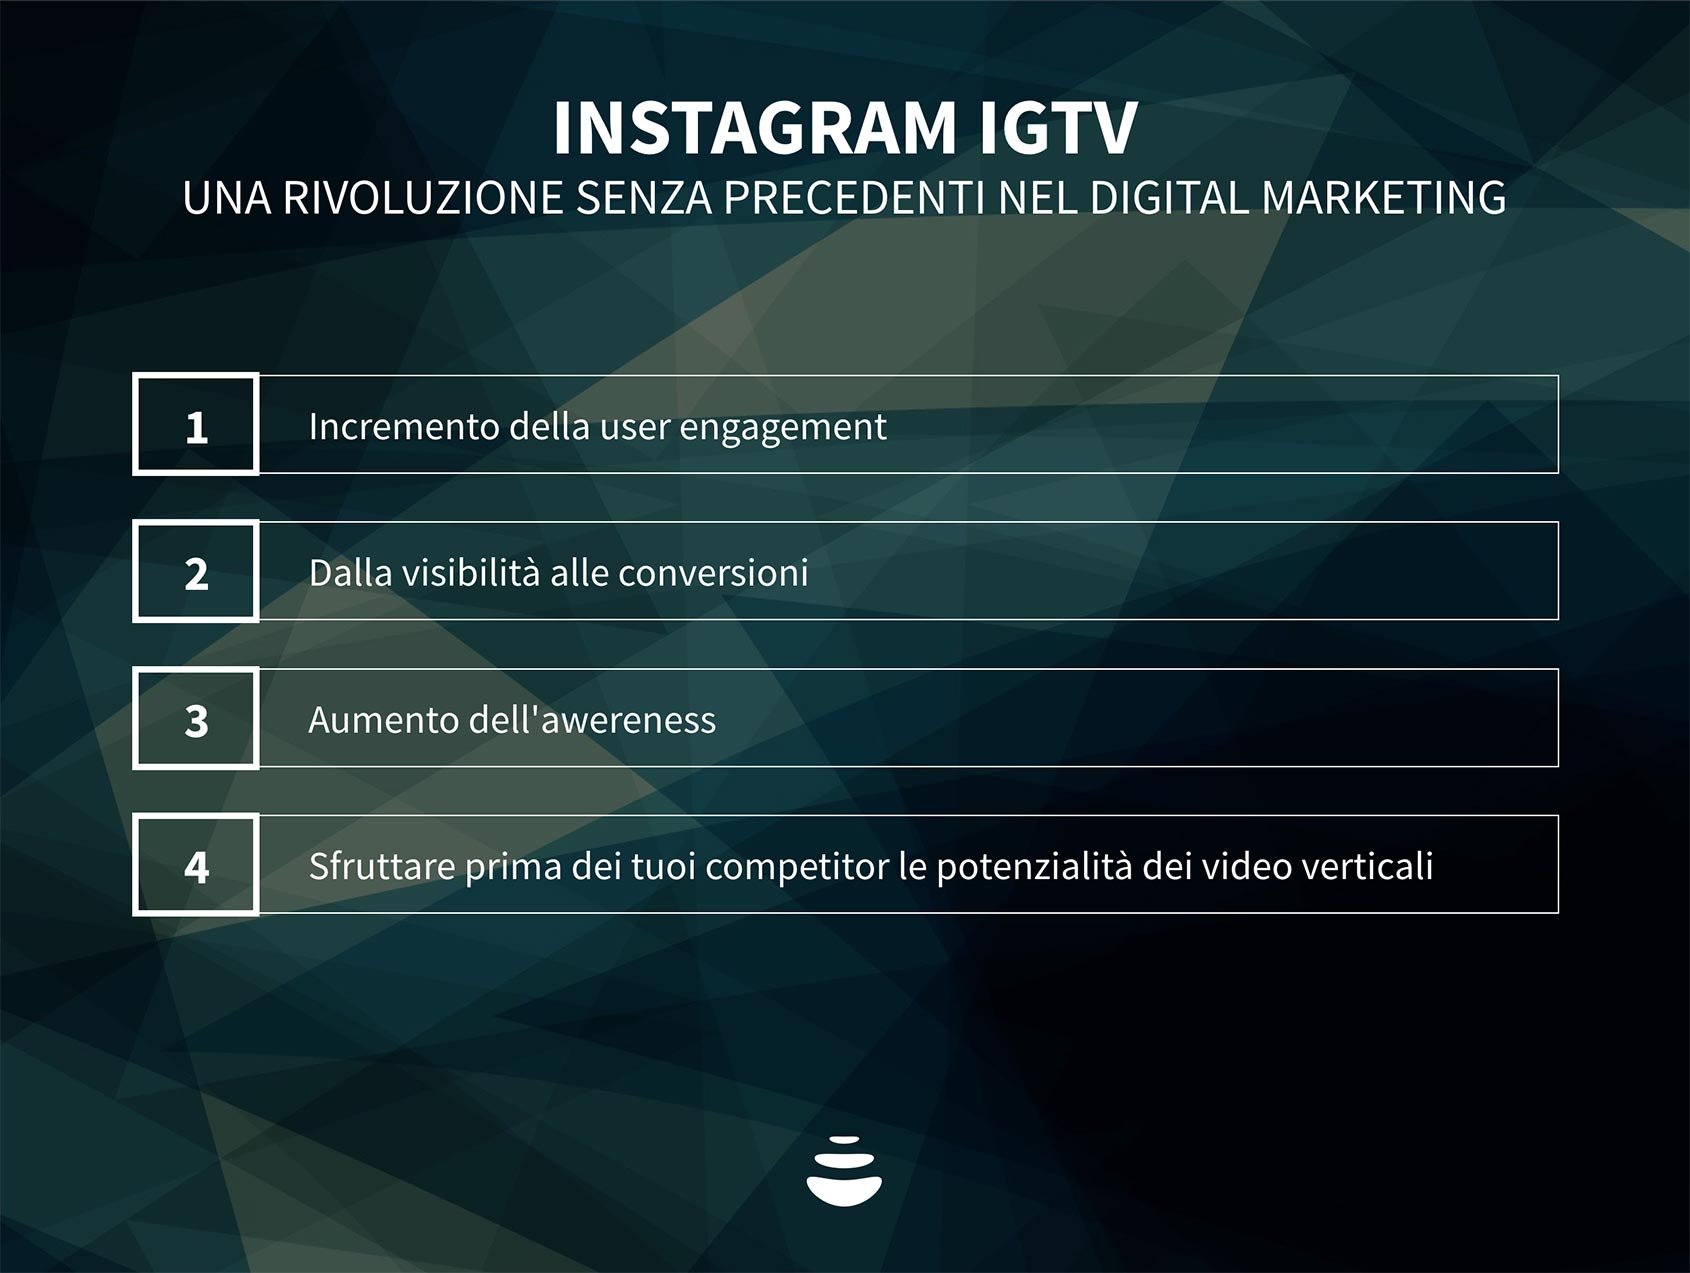 IGTV di Instagram: cosa devono sapere i brand per iniziare